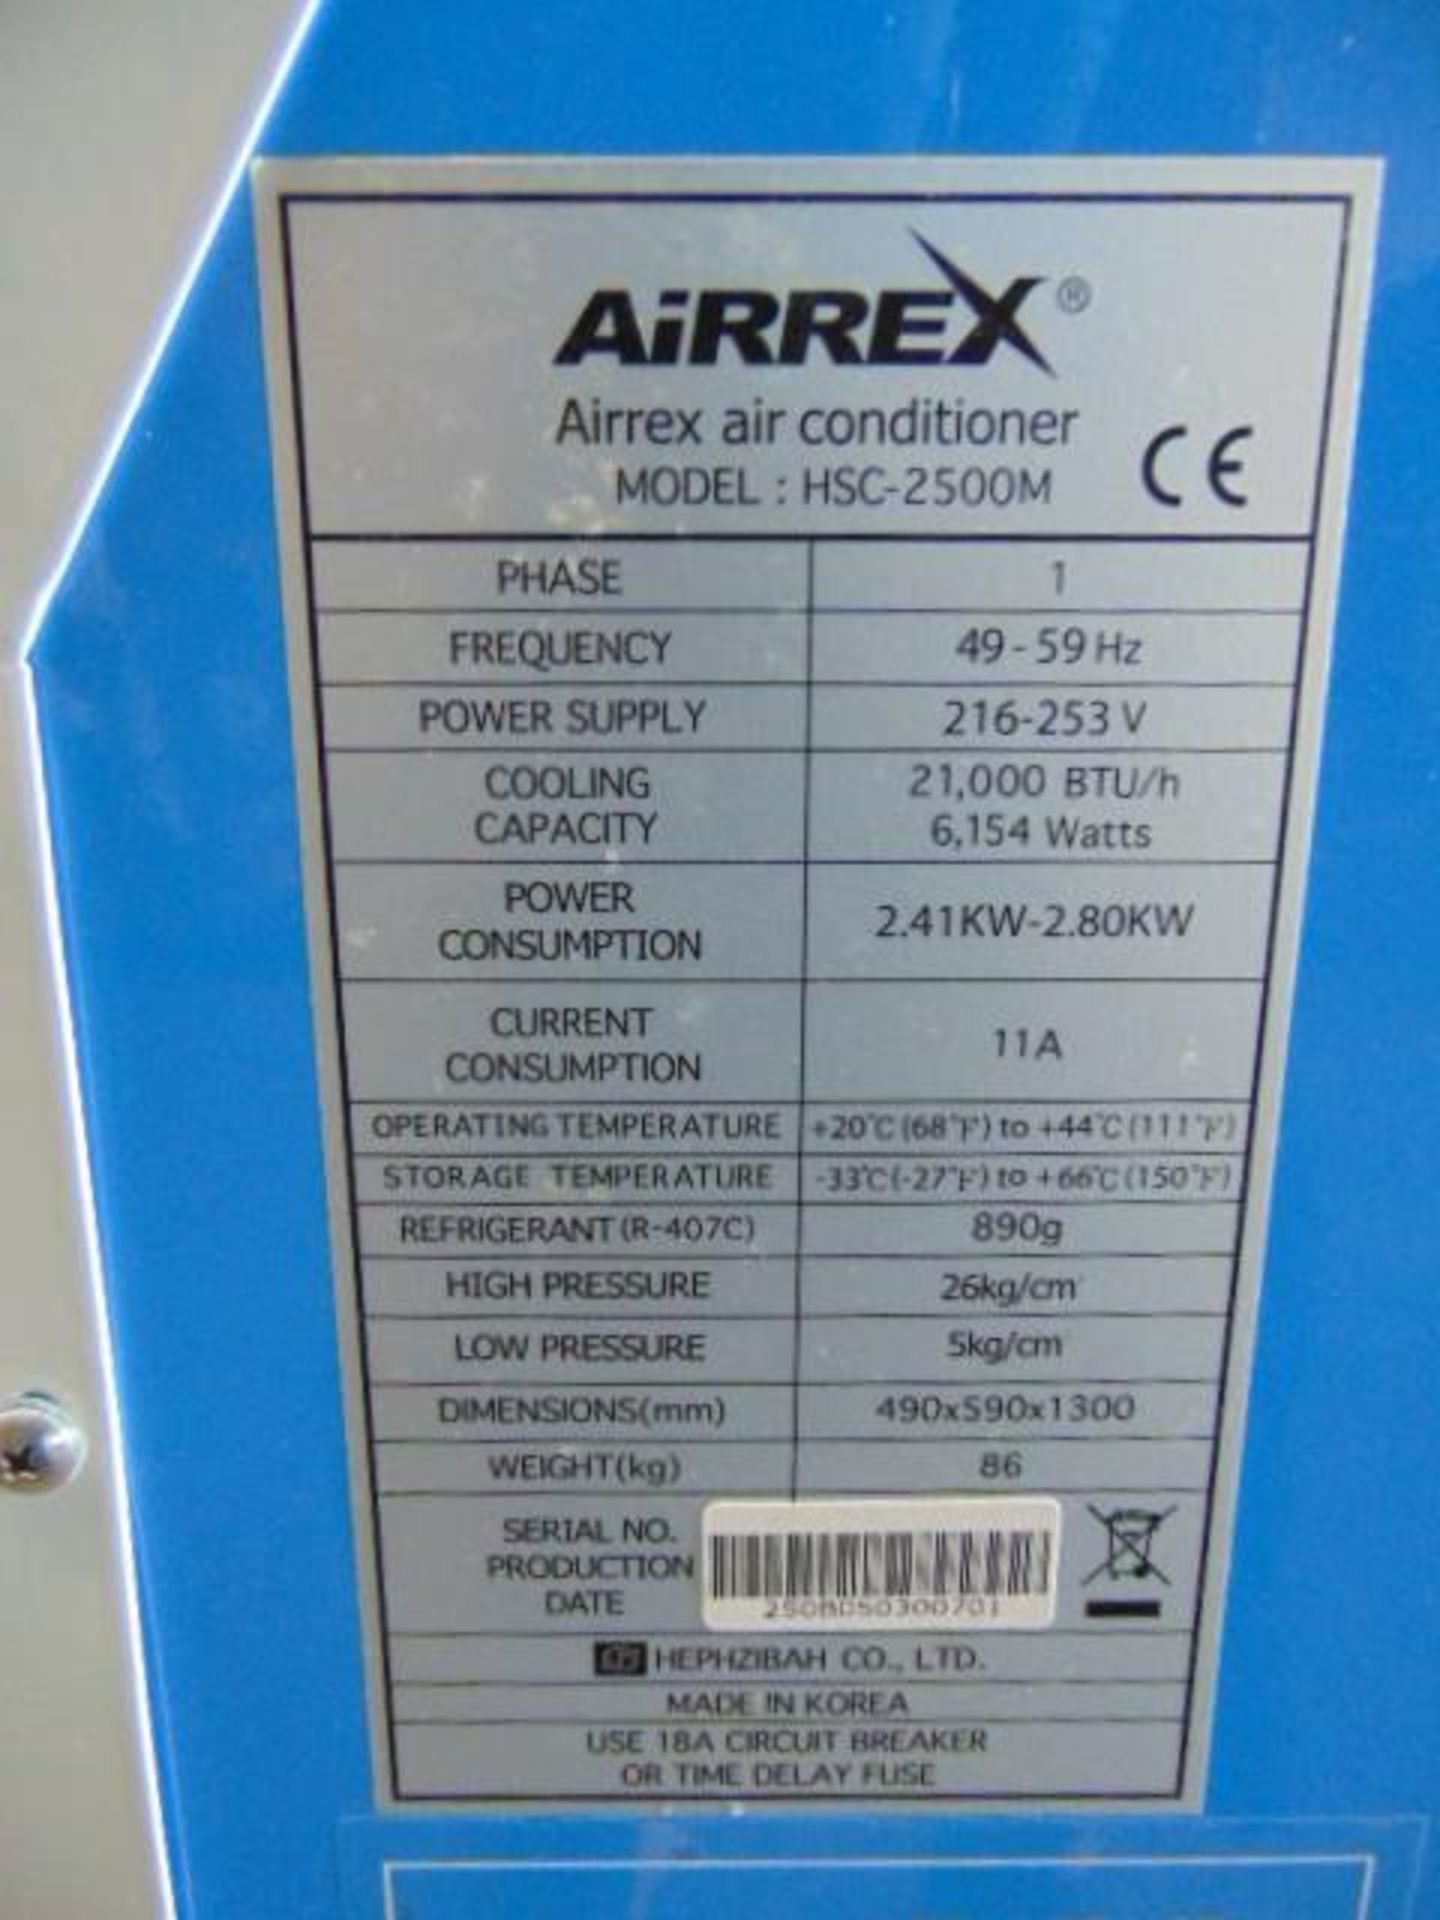 UNUSED Airrex HSC-2500M Air Conditioning Unit unused - Image 9 of 11